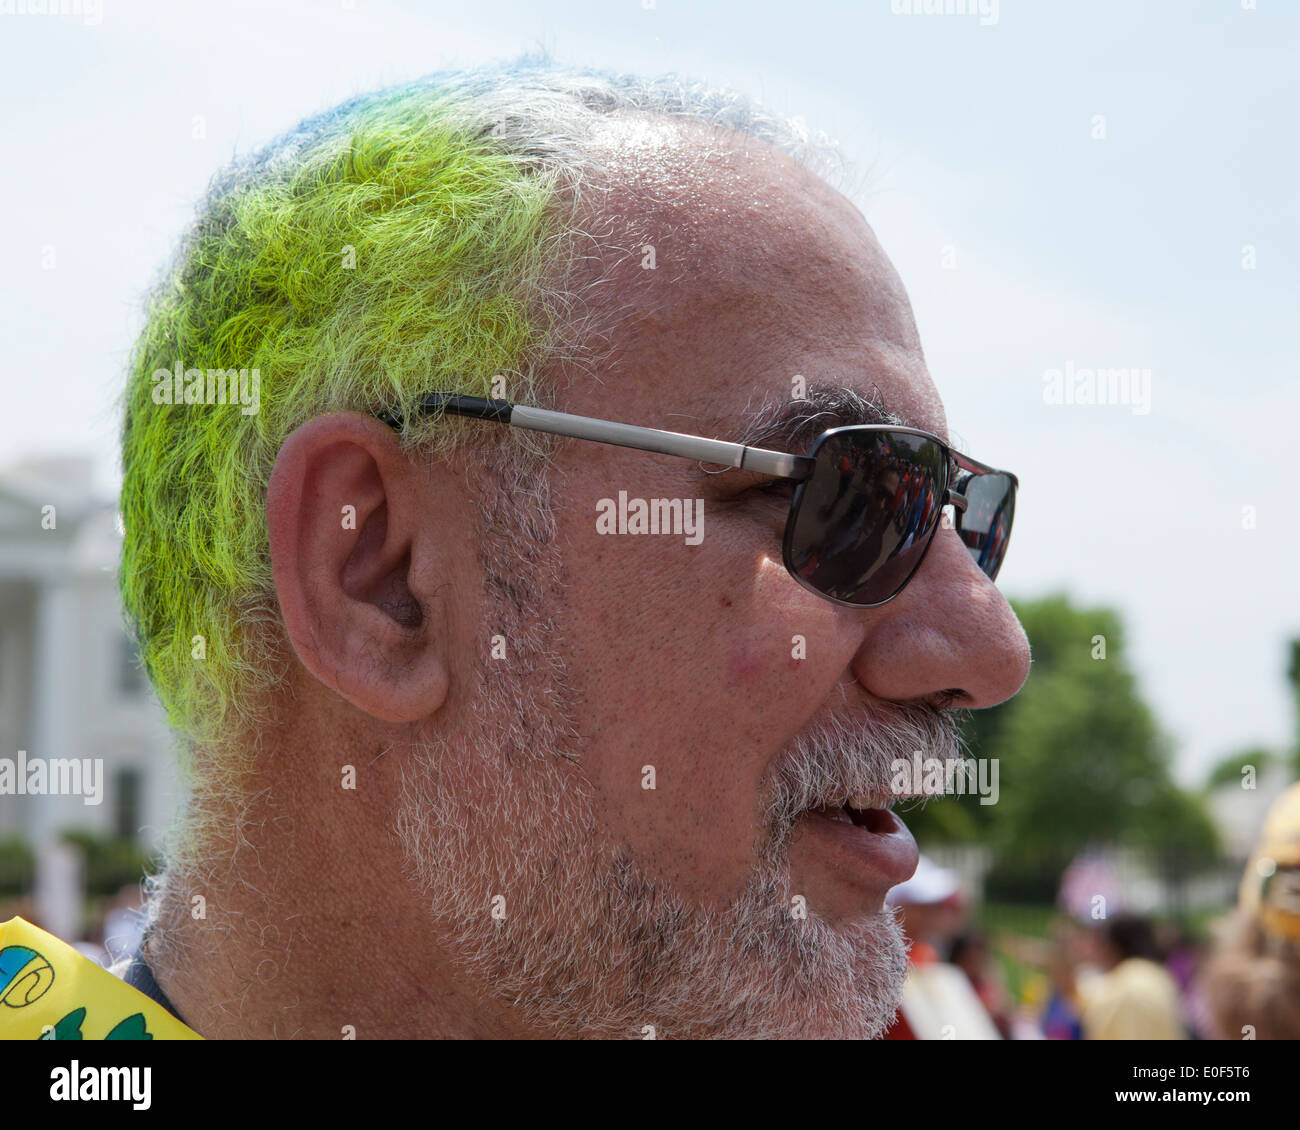 Dye hair man immagini e fotografie stock ad alta risoluzione - Alamy